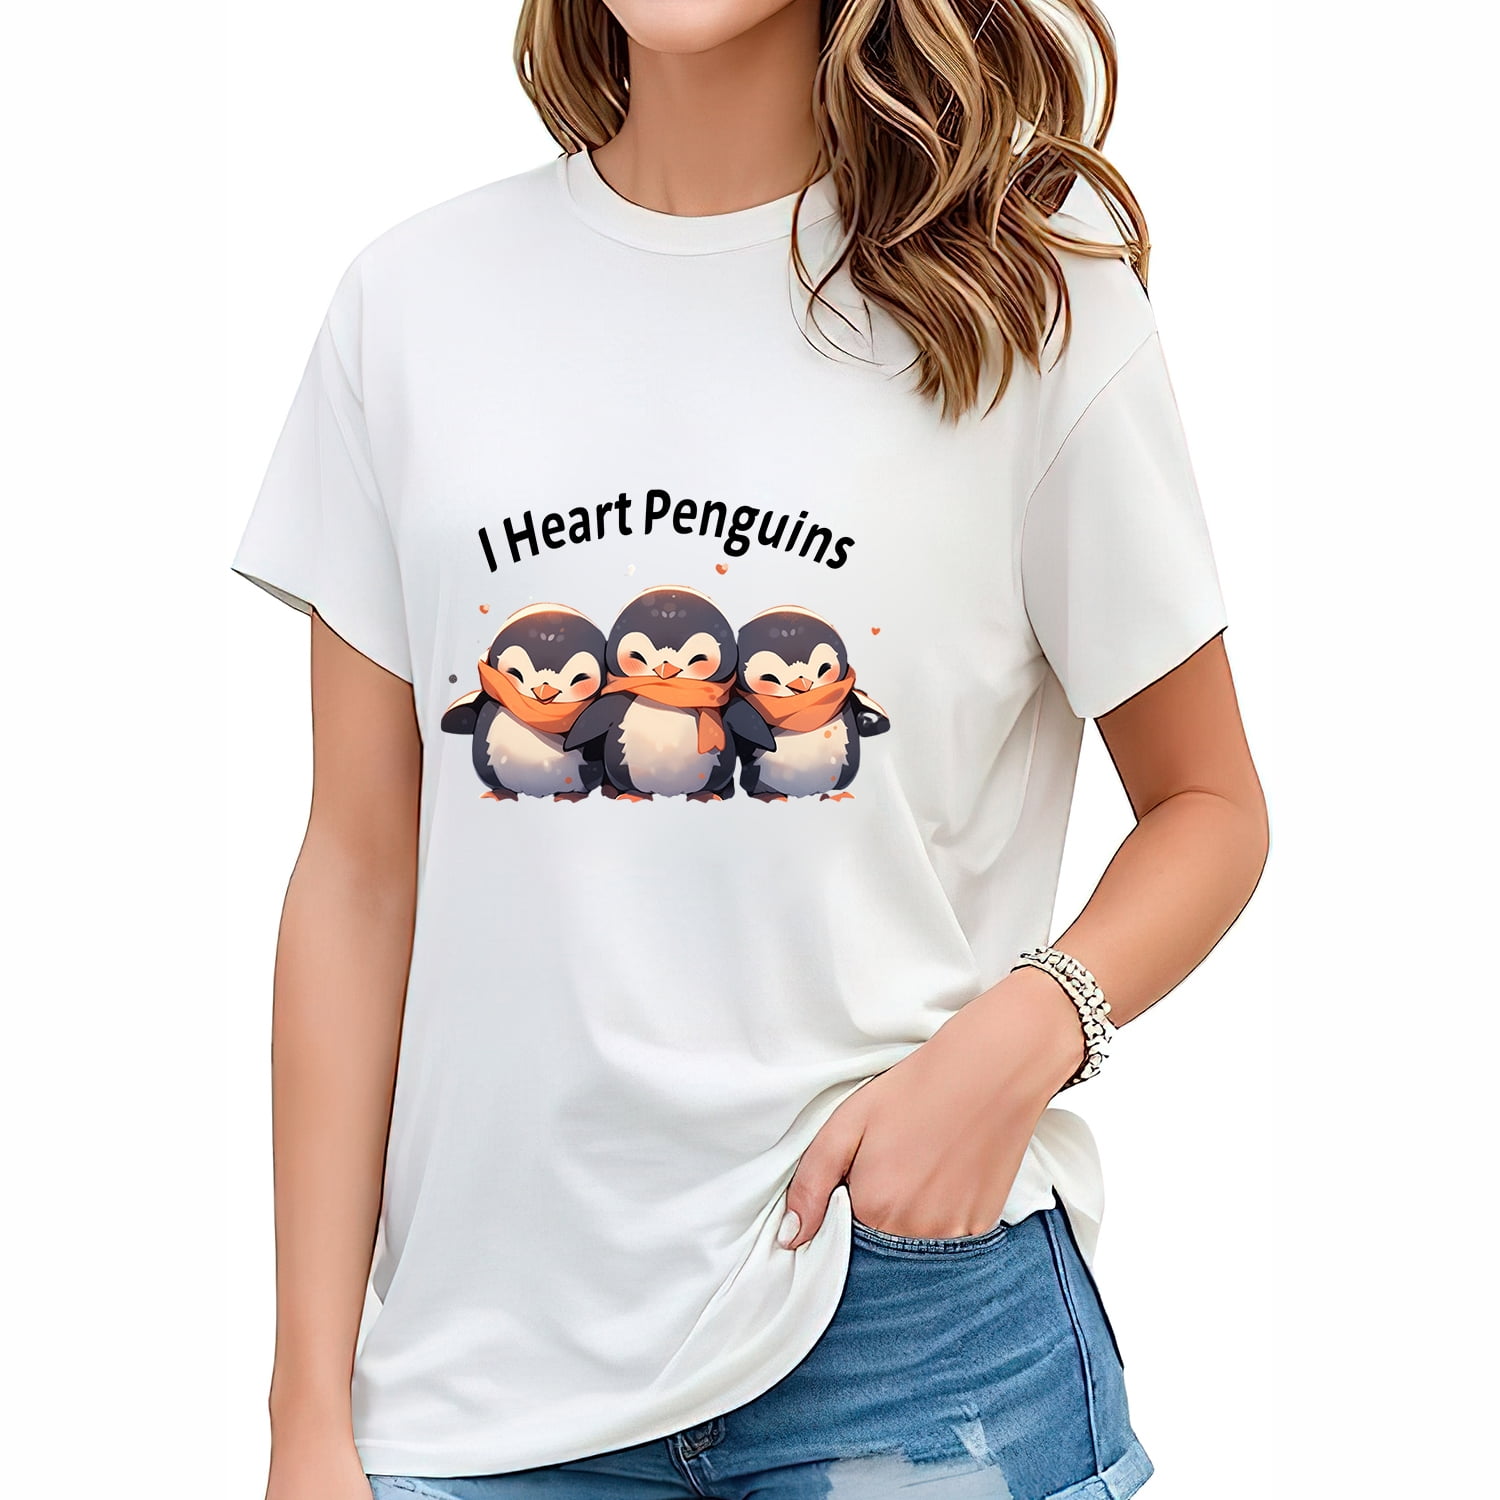 I Heart Penguins Penguin Lover Gift Fashionable Women's Graphic Tee ...